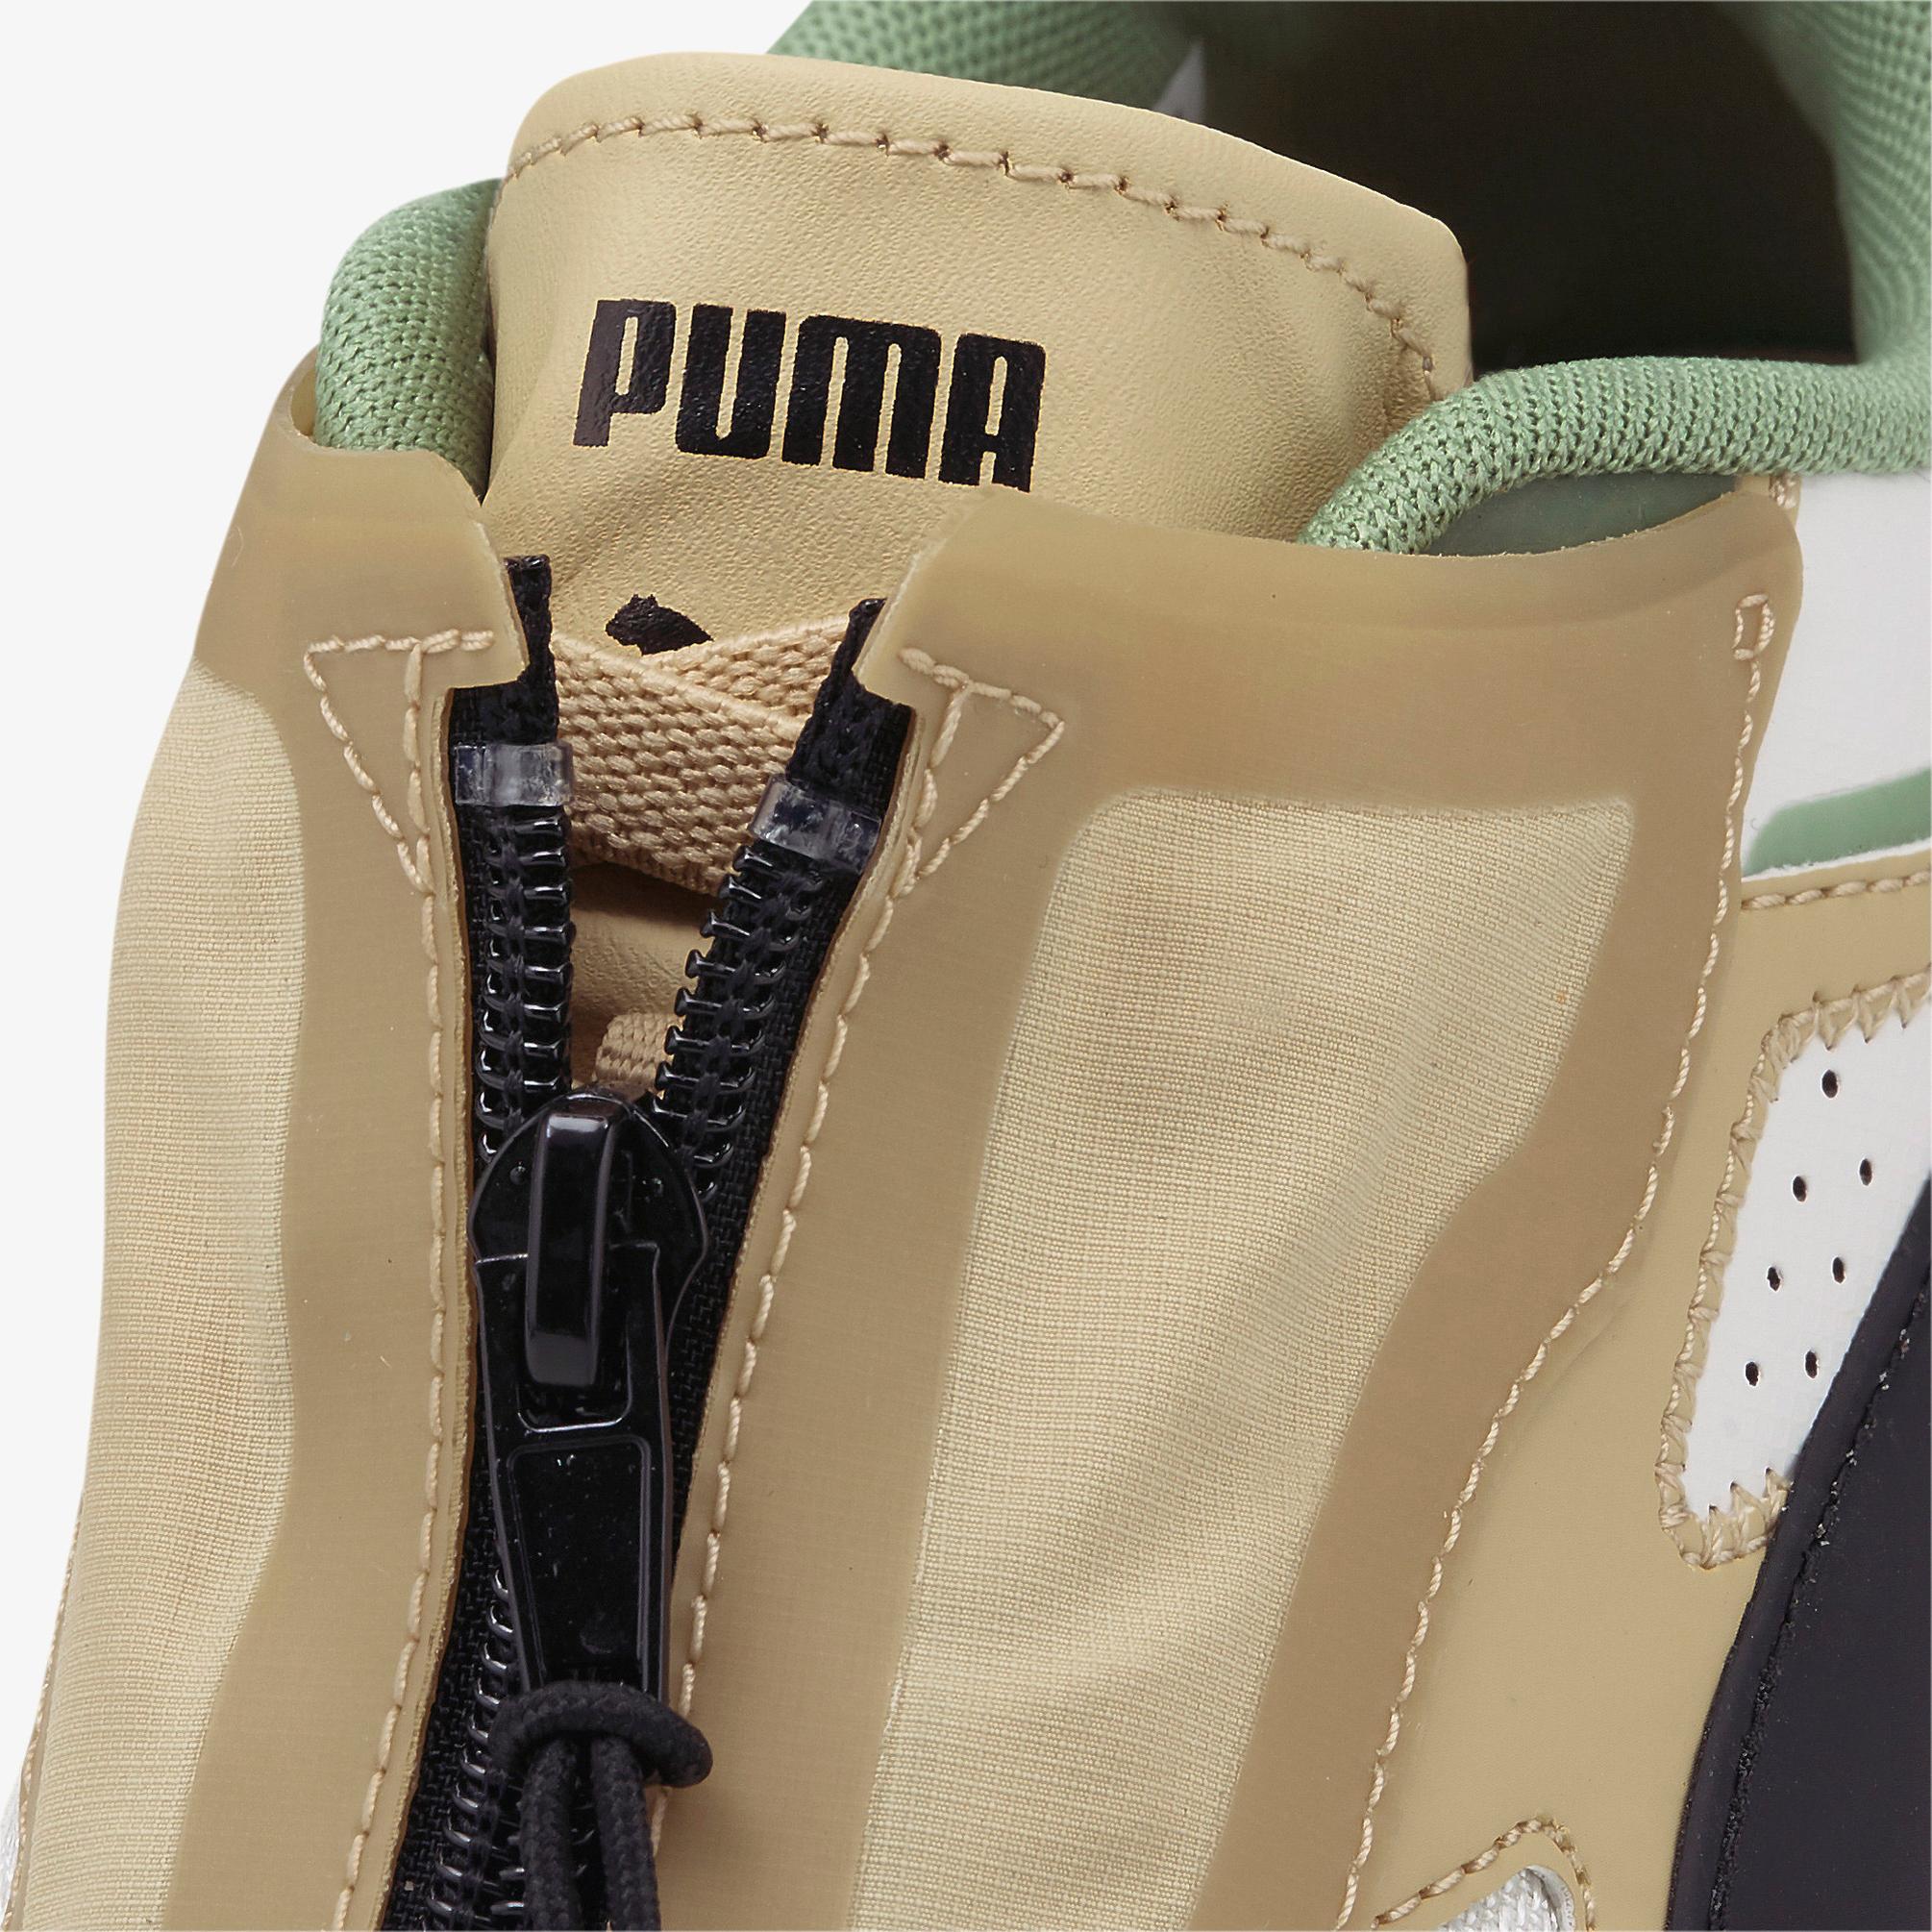  Puma Kosmo Rider Kadın Renkli Spor Ayakkabı